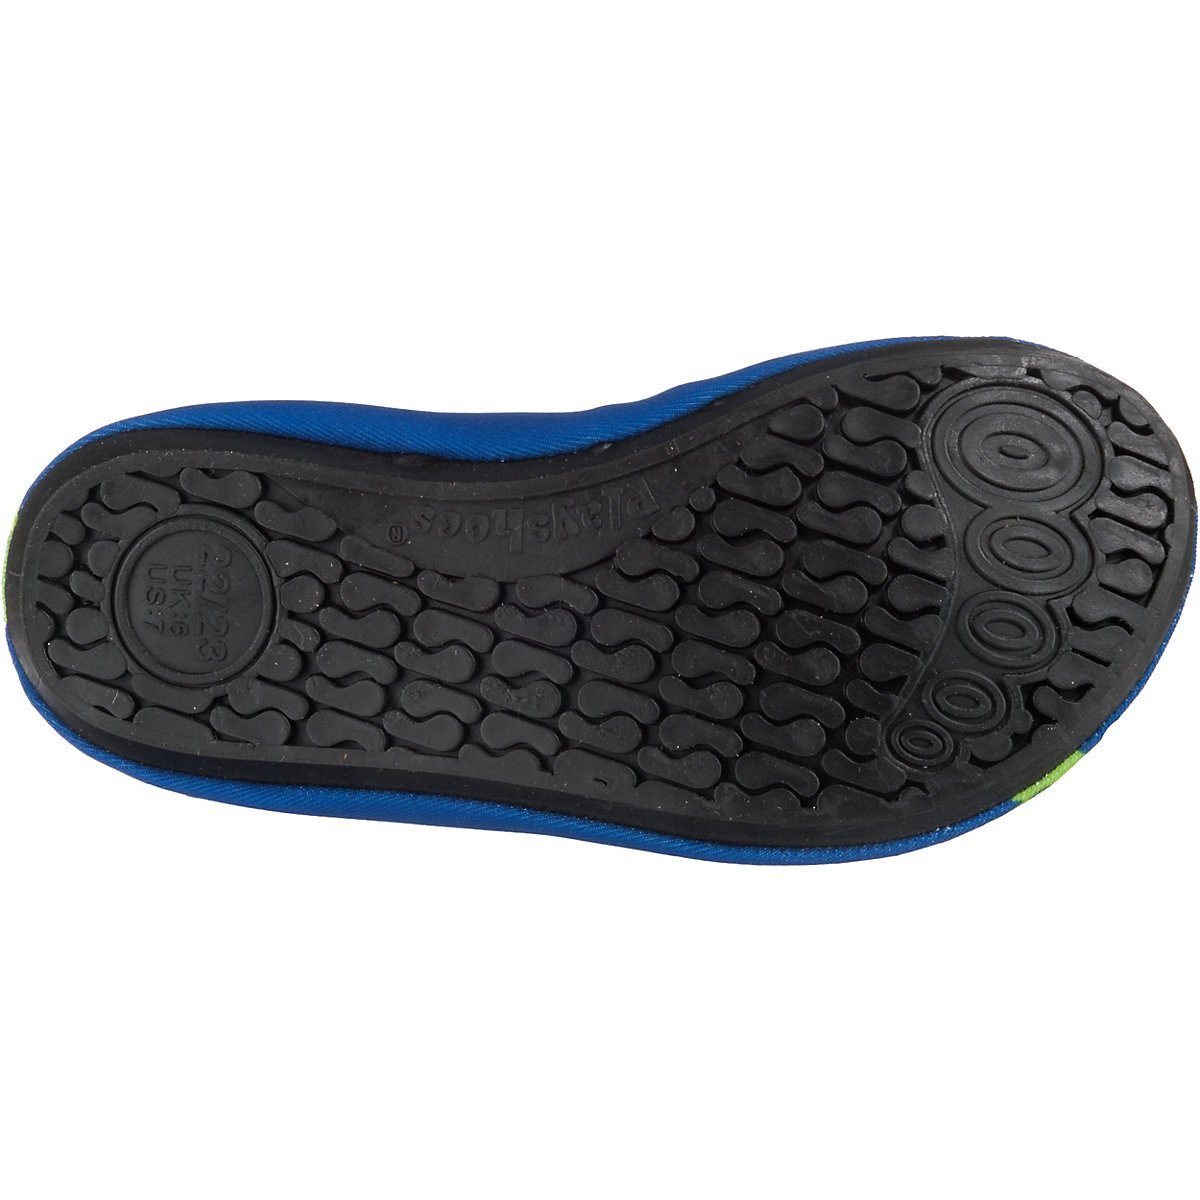 Barfuß-Schuh Schwimmschuhe, Sohle mit rutschhemmender Badeschuhe Wasserschuhe Passform, Krodkodil-blau flexible Badeschuh Motiv Playshoes